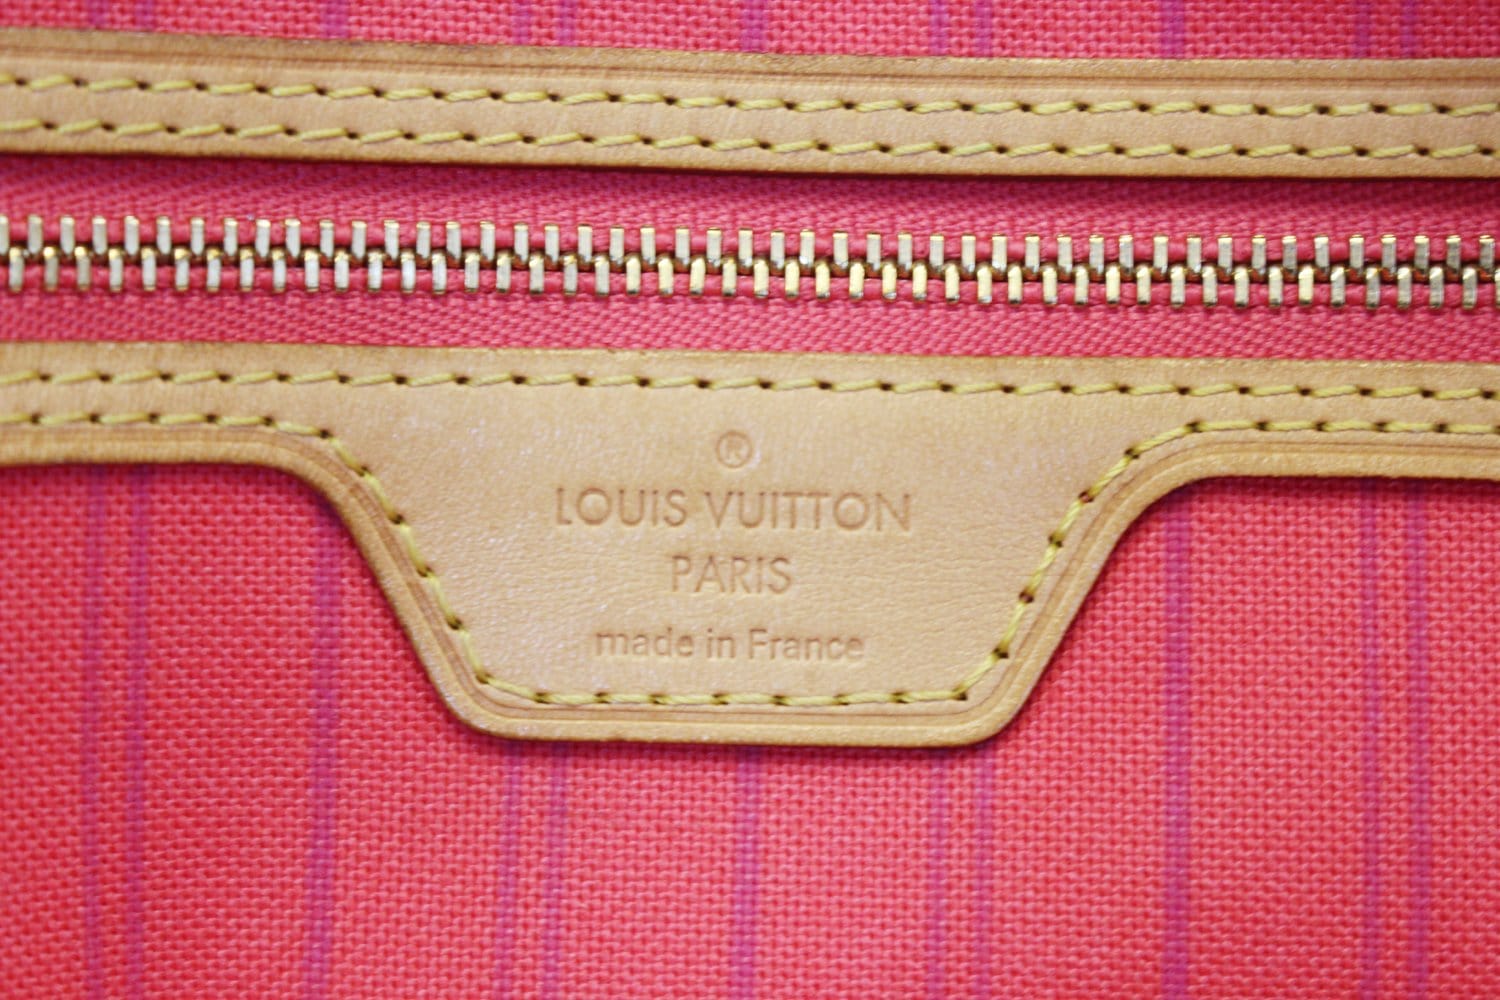 Louis Vuitton Delightful MM Damier Azur – Luxi Bags